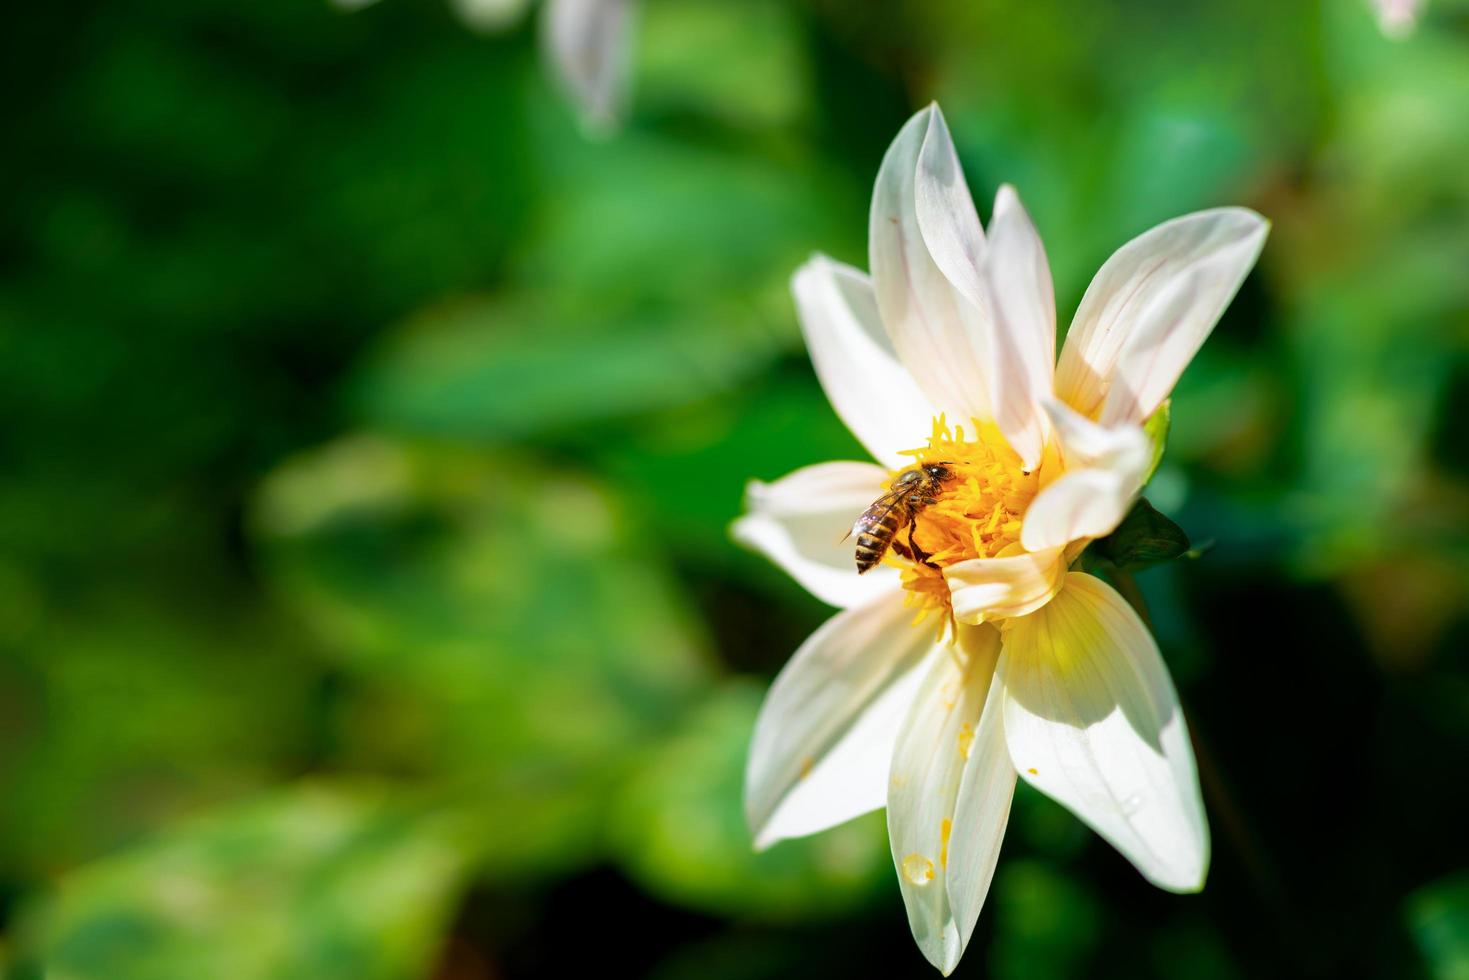 abeille assis sur la fleur blanche photo